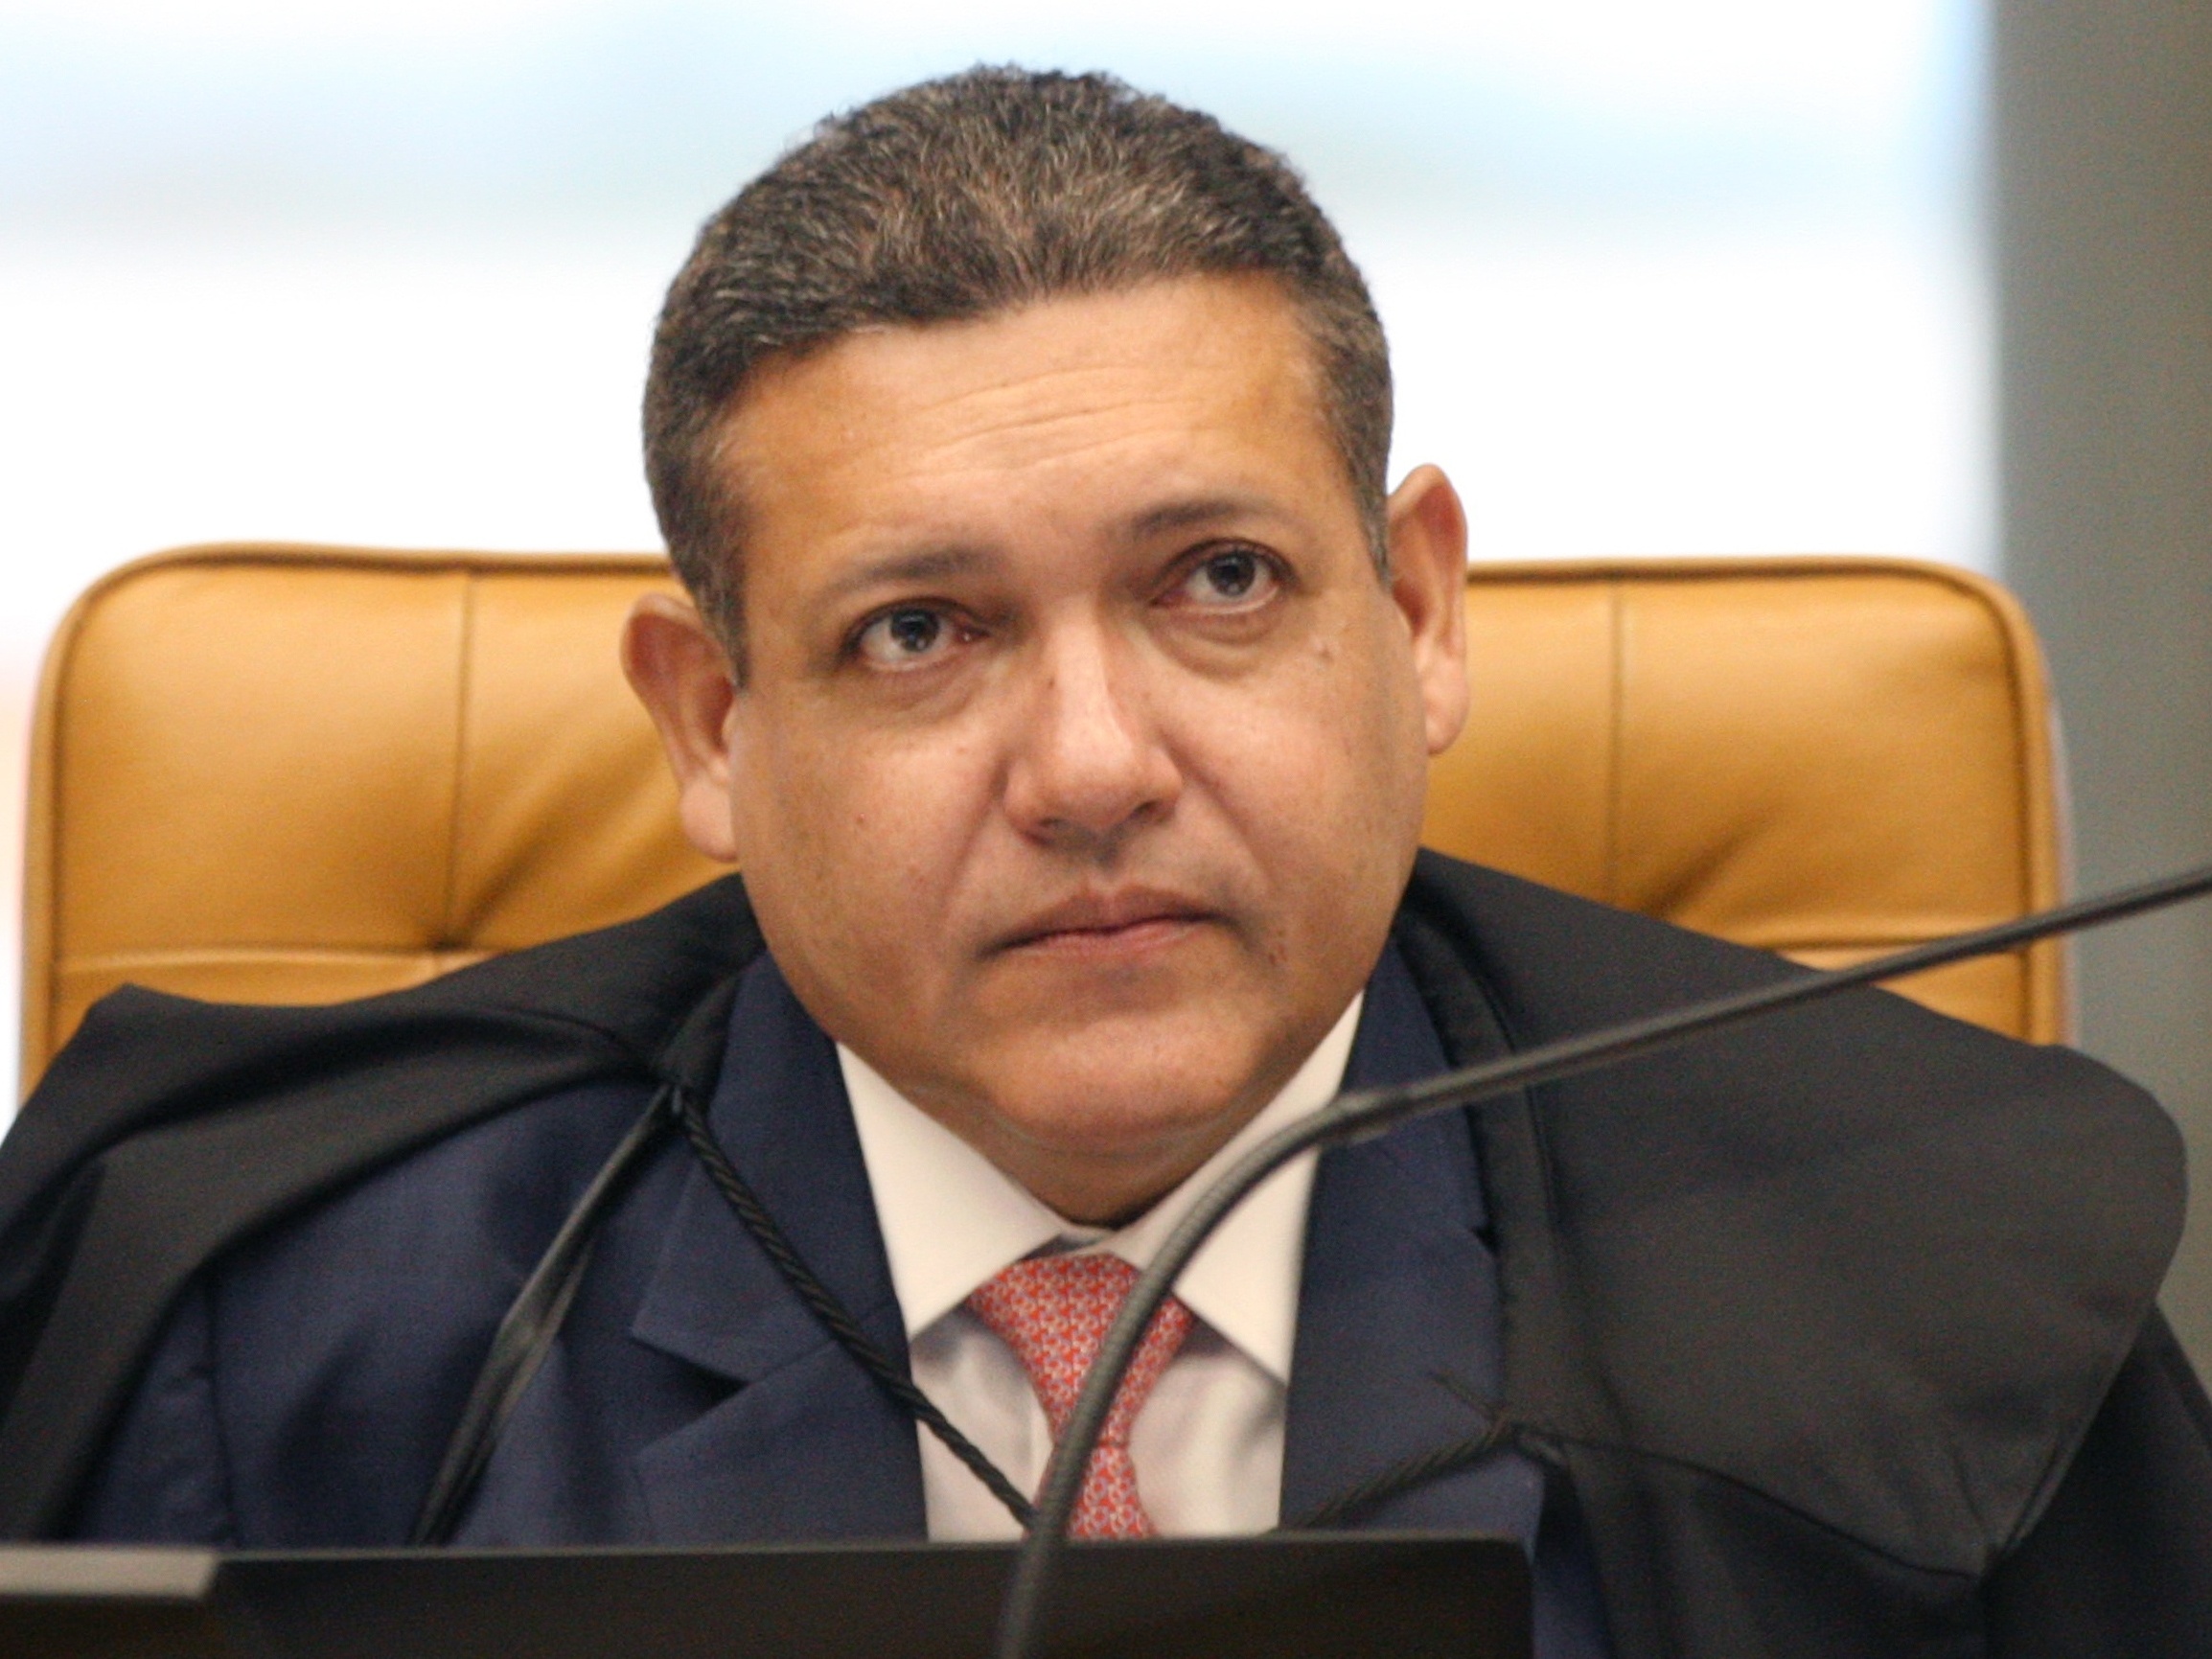 AUXÍLIO BRASIL: MINISTRO NUNES MARQUES, DO STF, NEGA SUSPENSÃO DO EMPRÉSTIMO CONSIGNADO